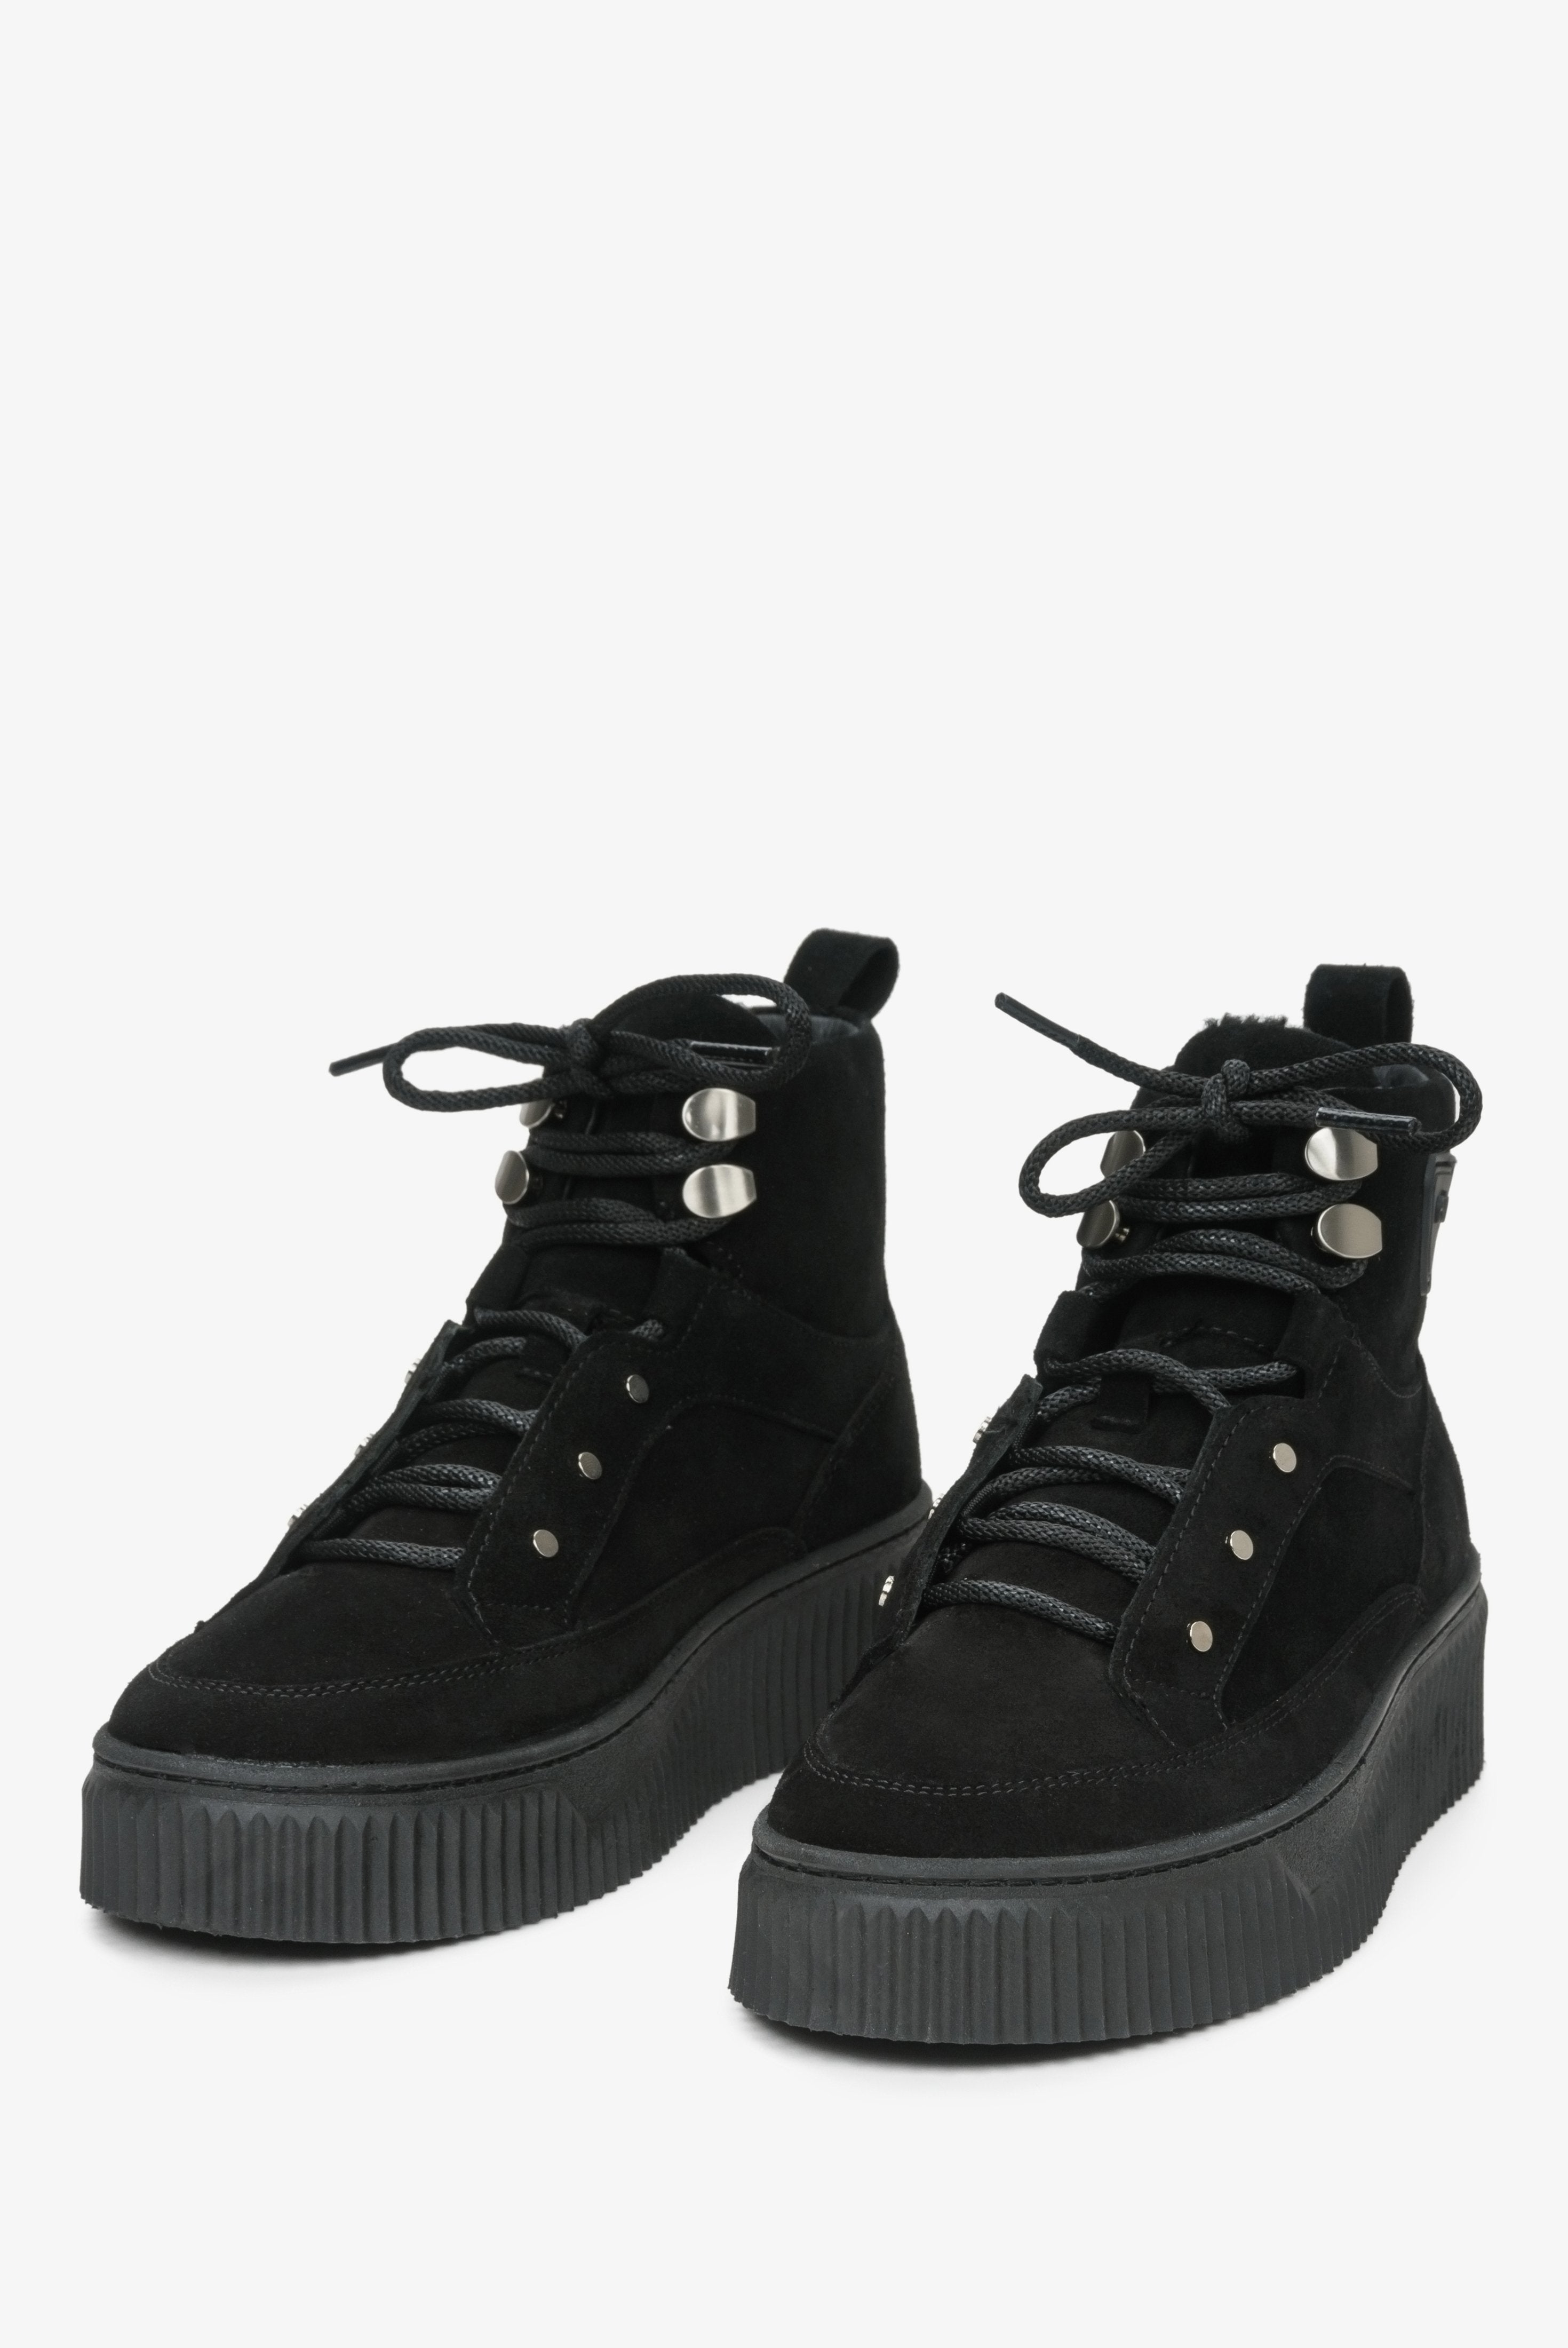 Wysokie sneakersy damskie na zimę z zamszu naturalnego ze sznurowaniem w kolorze czarnym marki Estro - zbliżenie na przednią część buta.